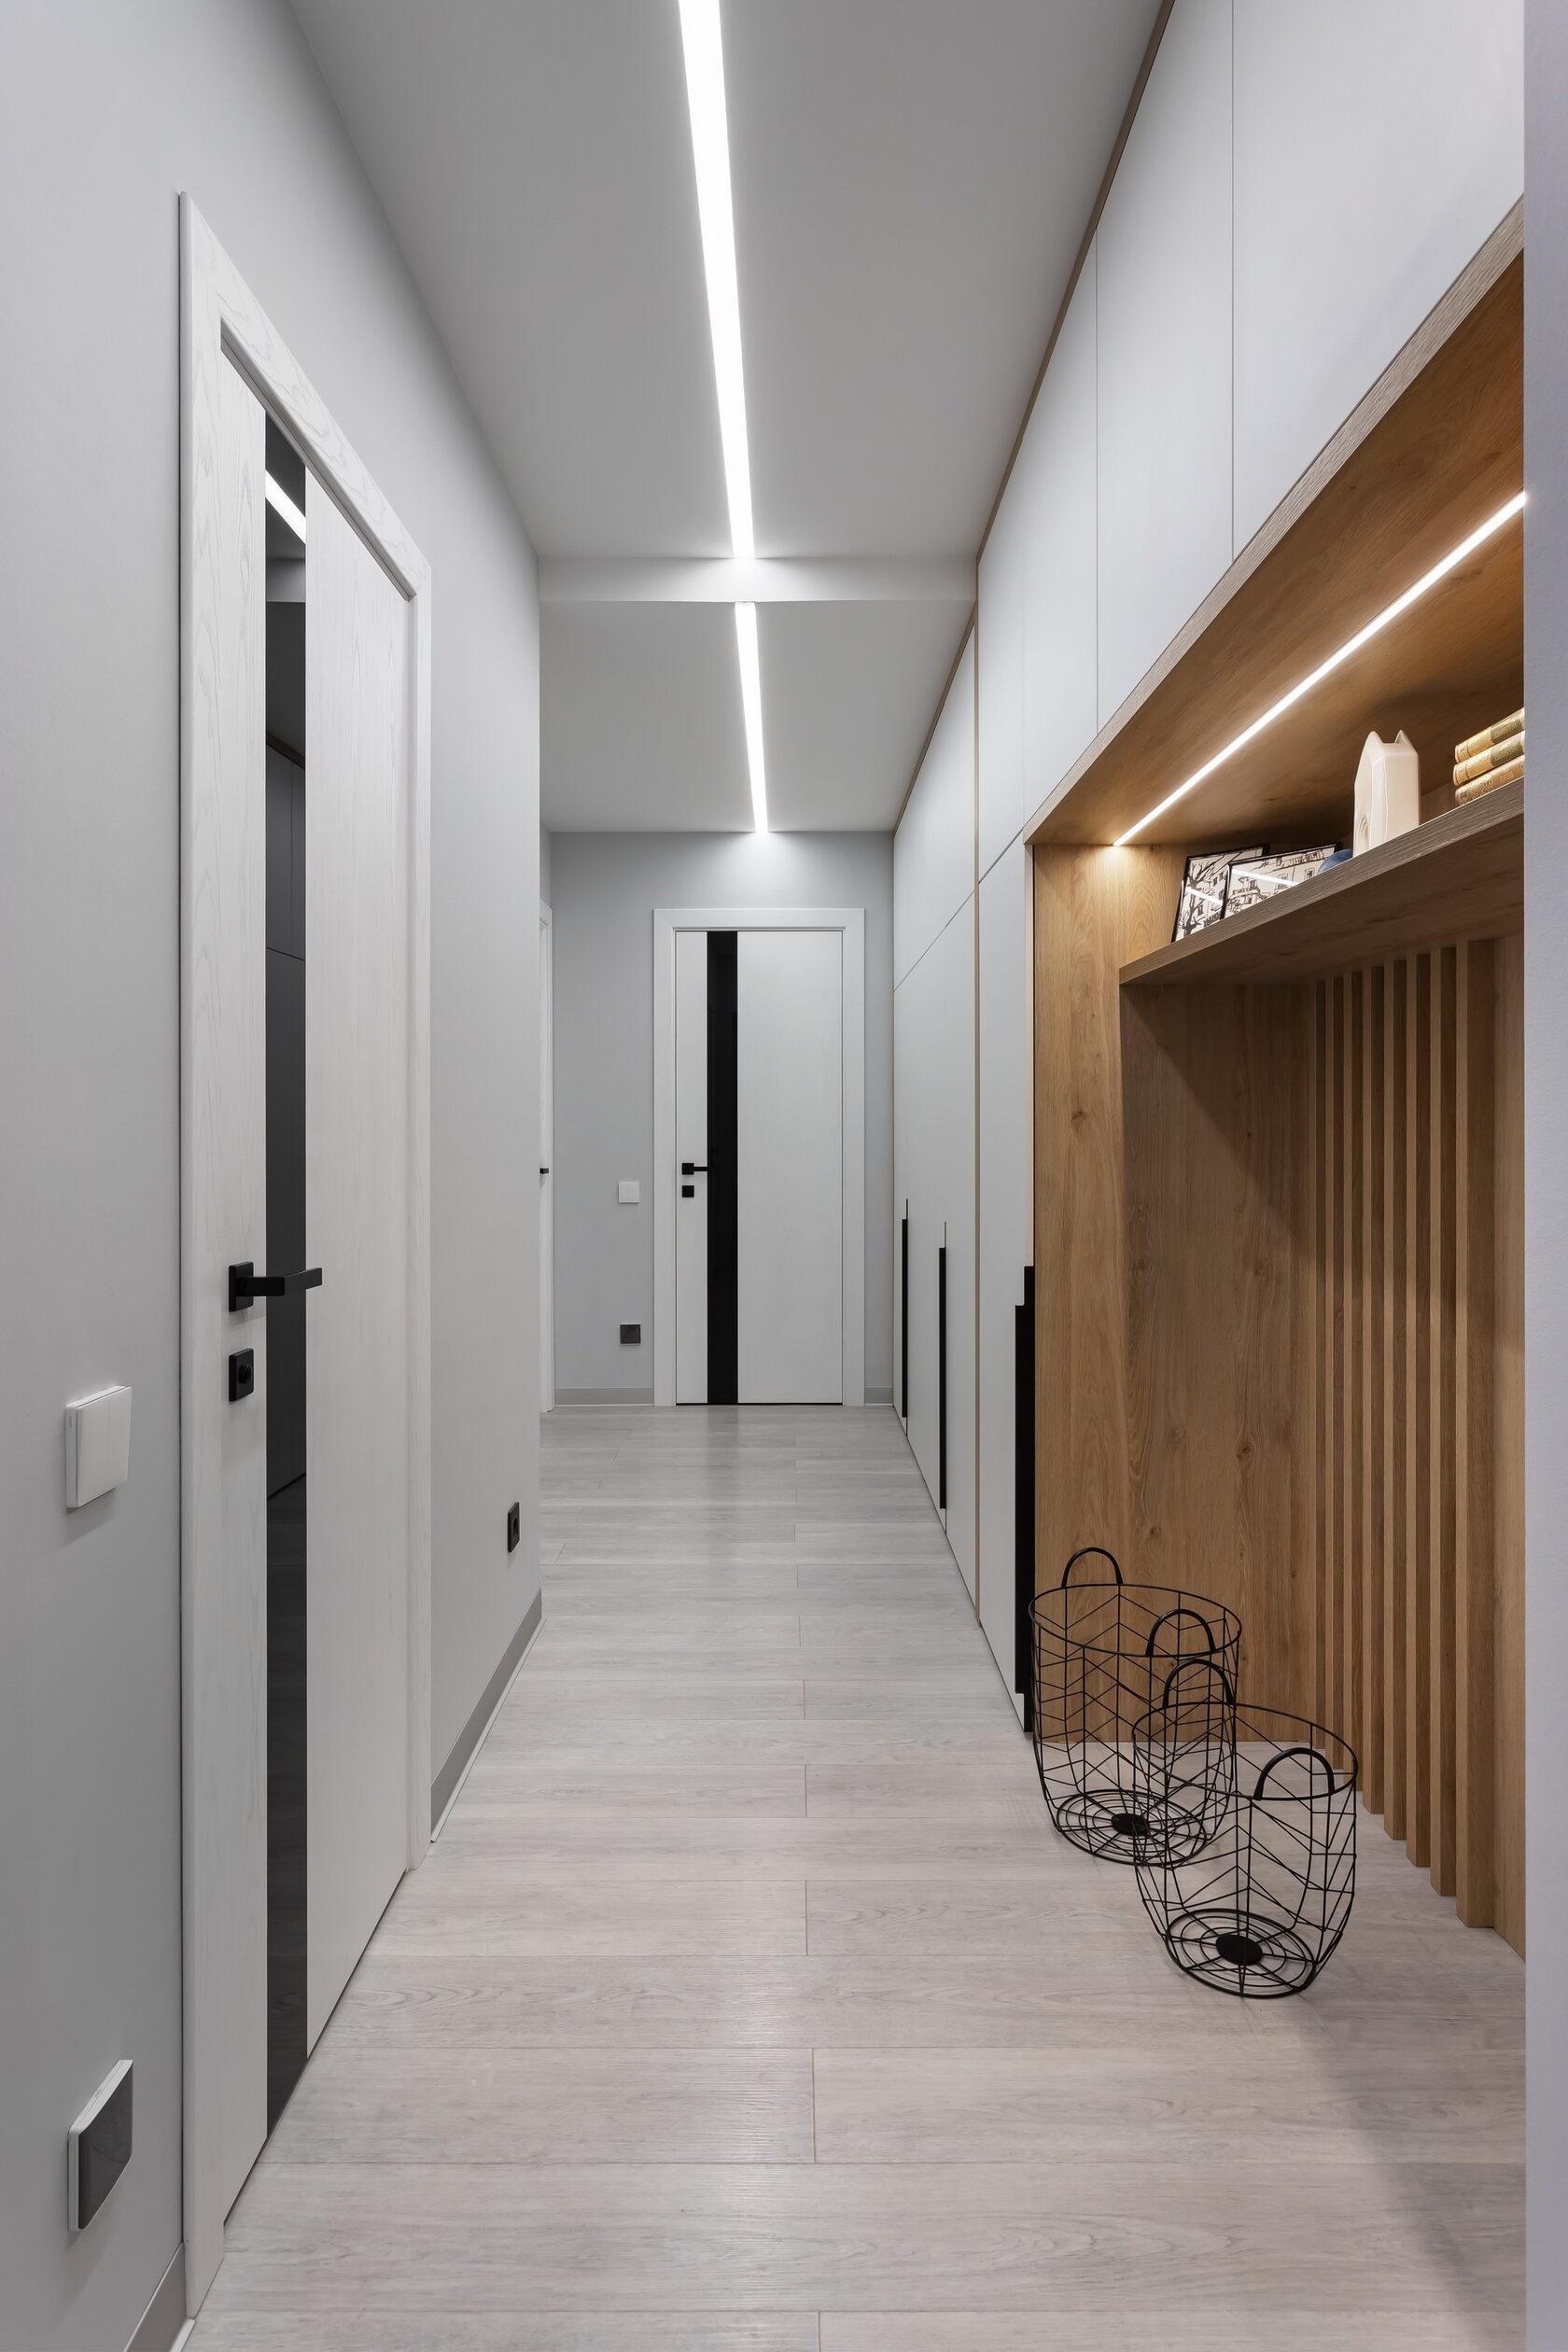 Интерьер коридора с рейками с подсветкой, подсветкой настенной, подсветкой светодиодной и с подсветкой